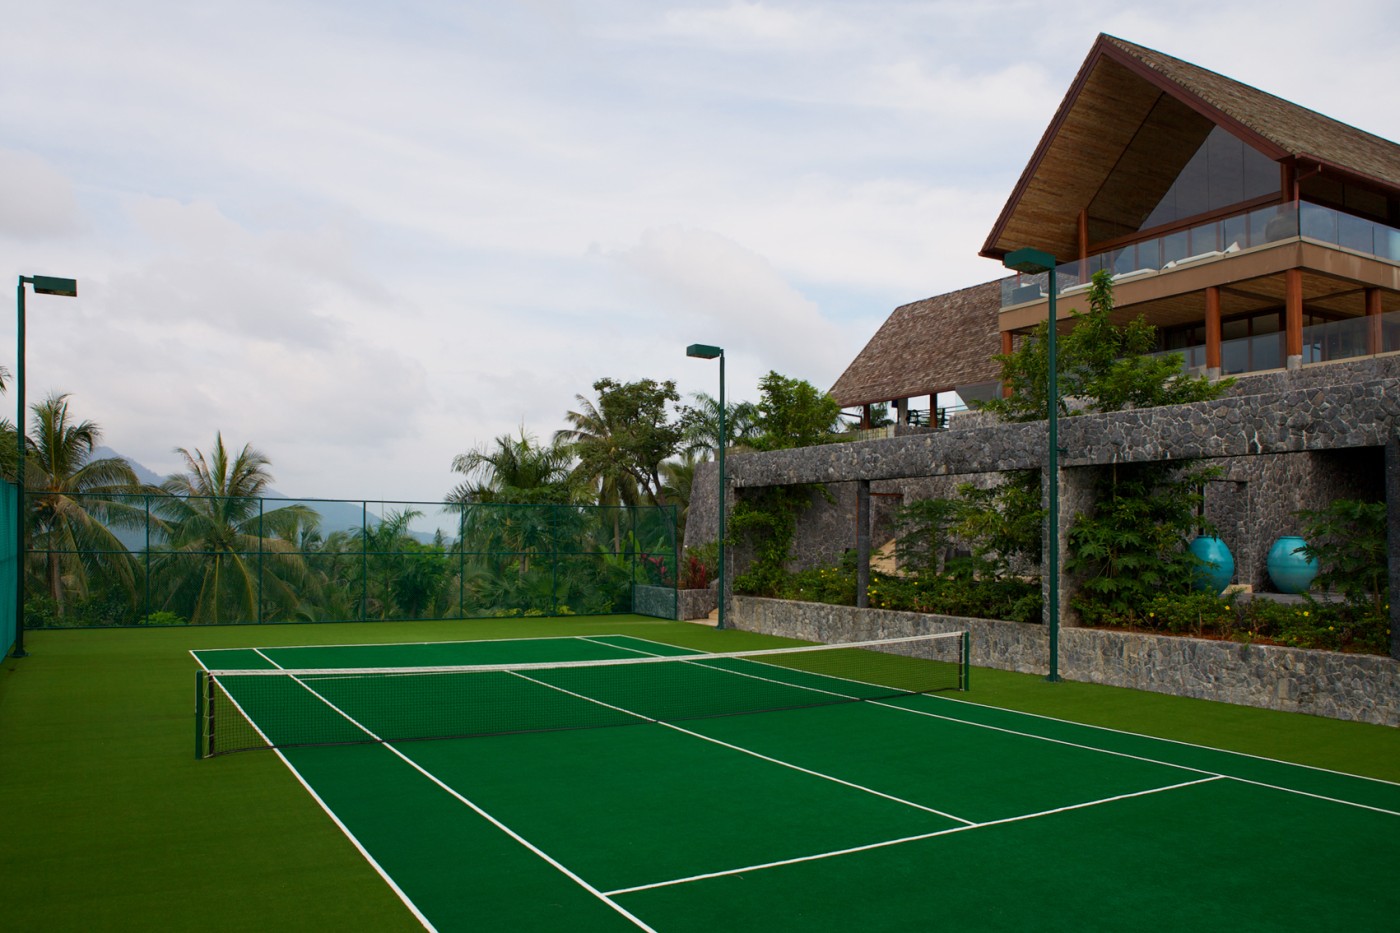 Tennis at the Panacea resort